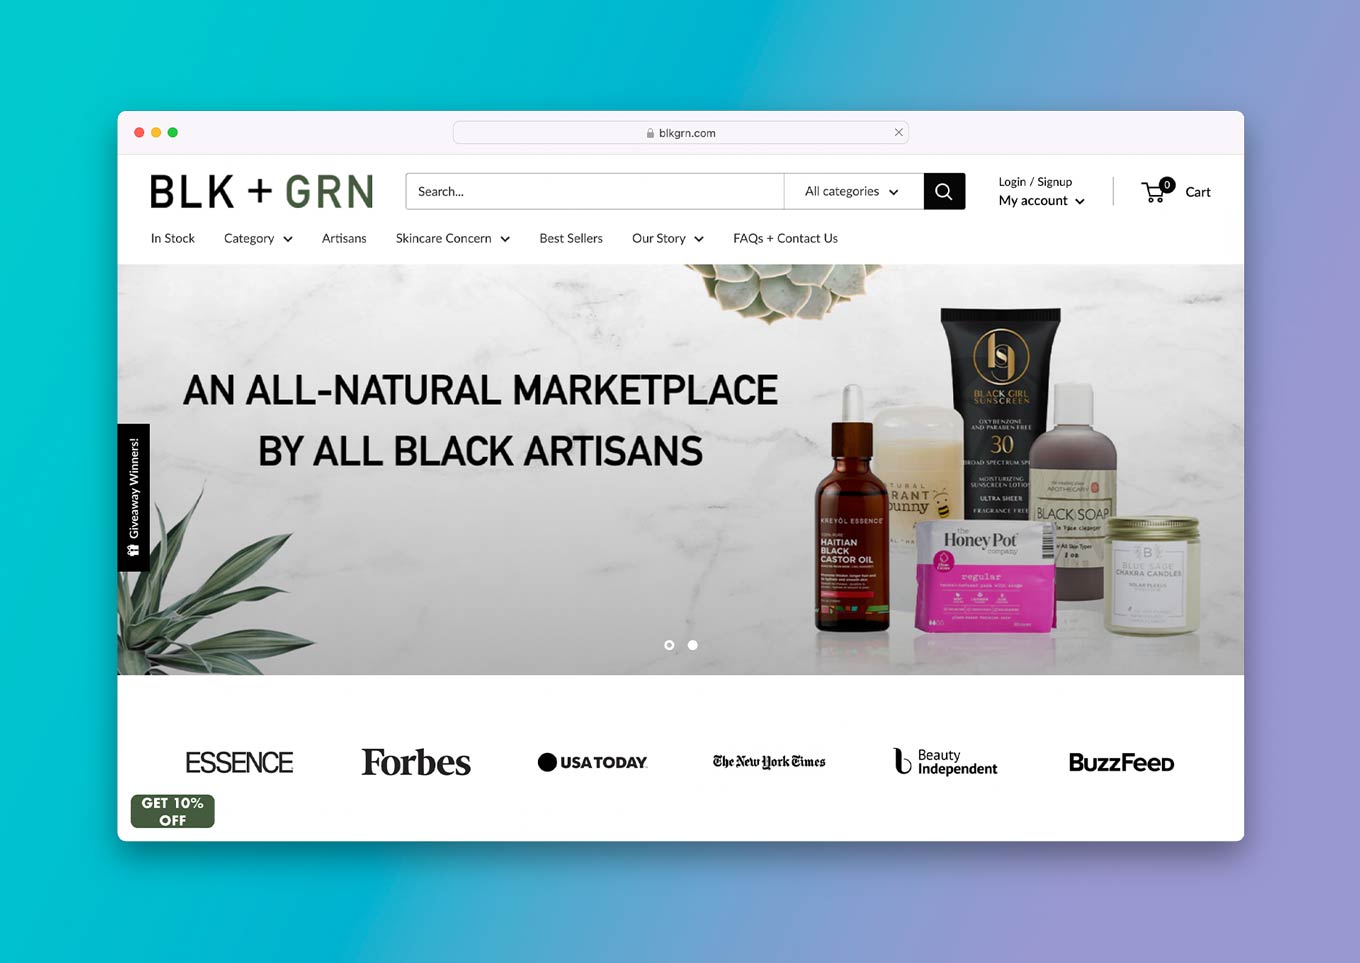 BLK + GRN Website: "Een volledig natuurlijke marktplaats door alle zwarte ambachtslieden"